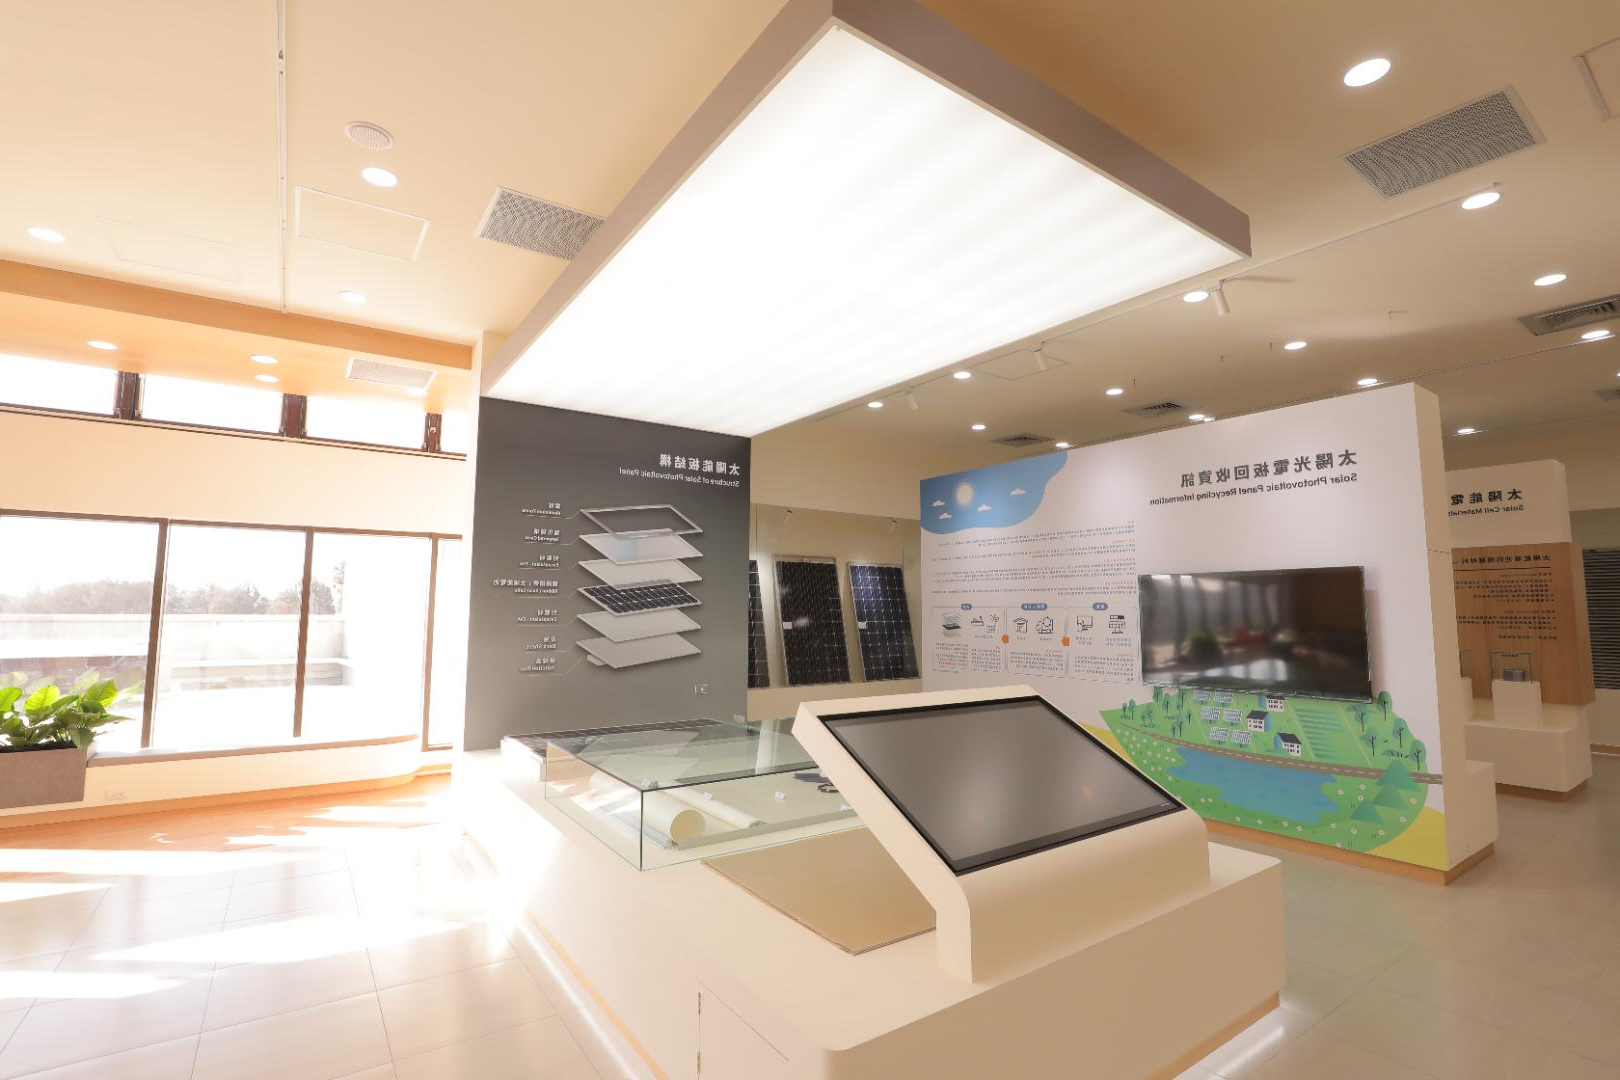 太阳光电教育展示馆, 王一设计, KingOneDesign, 商空设计, 展馆设计